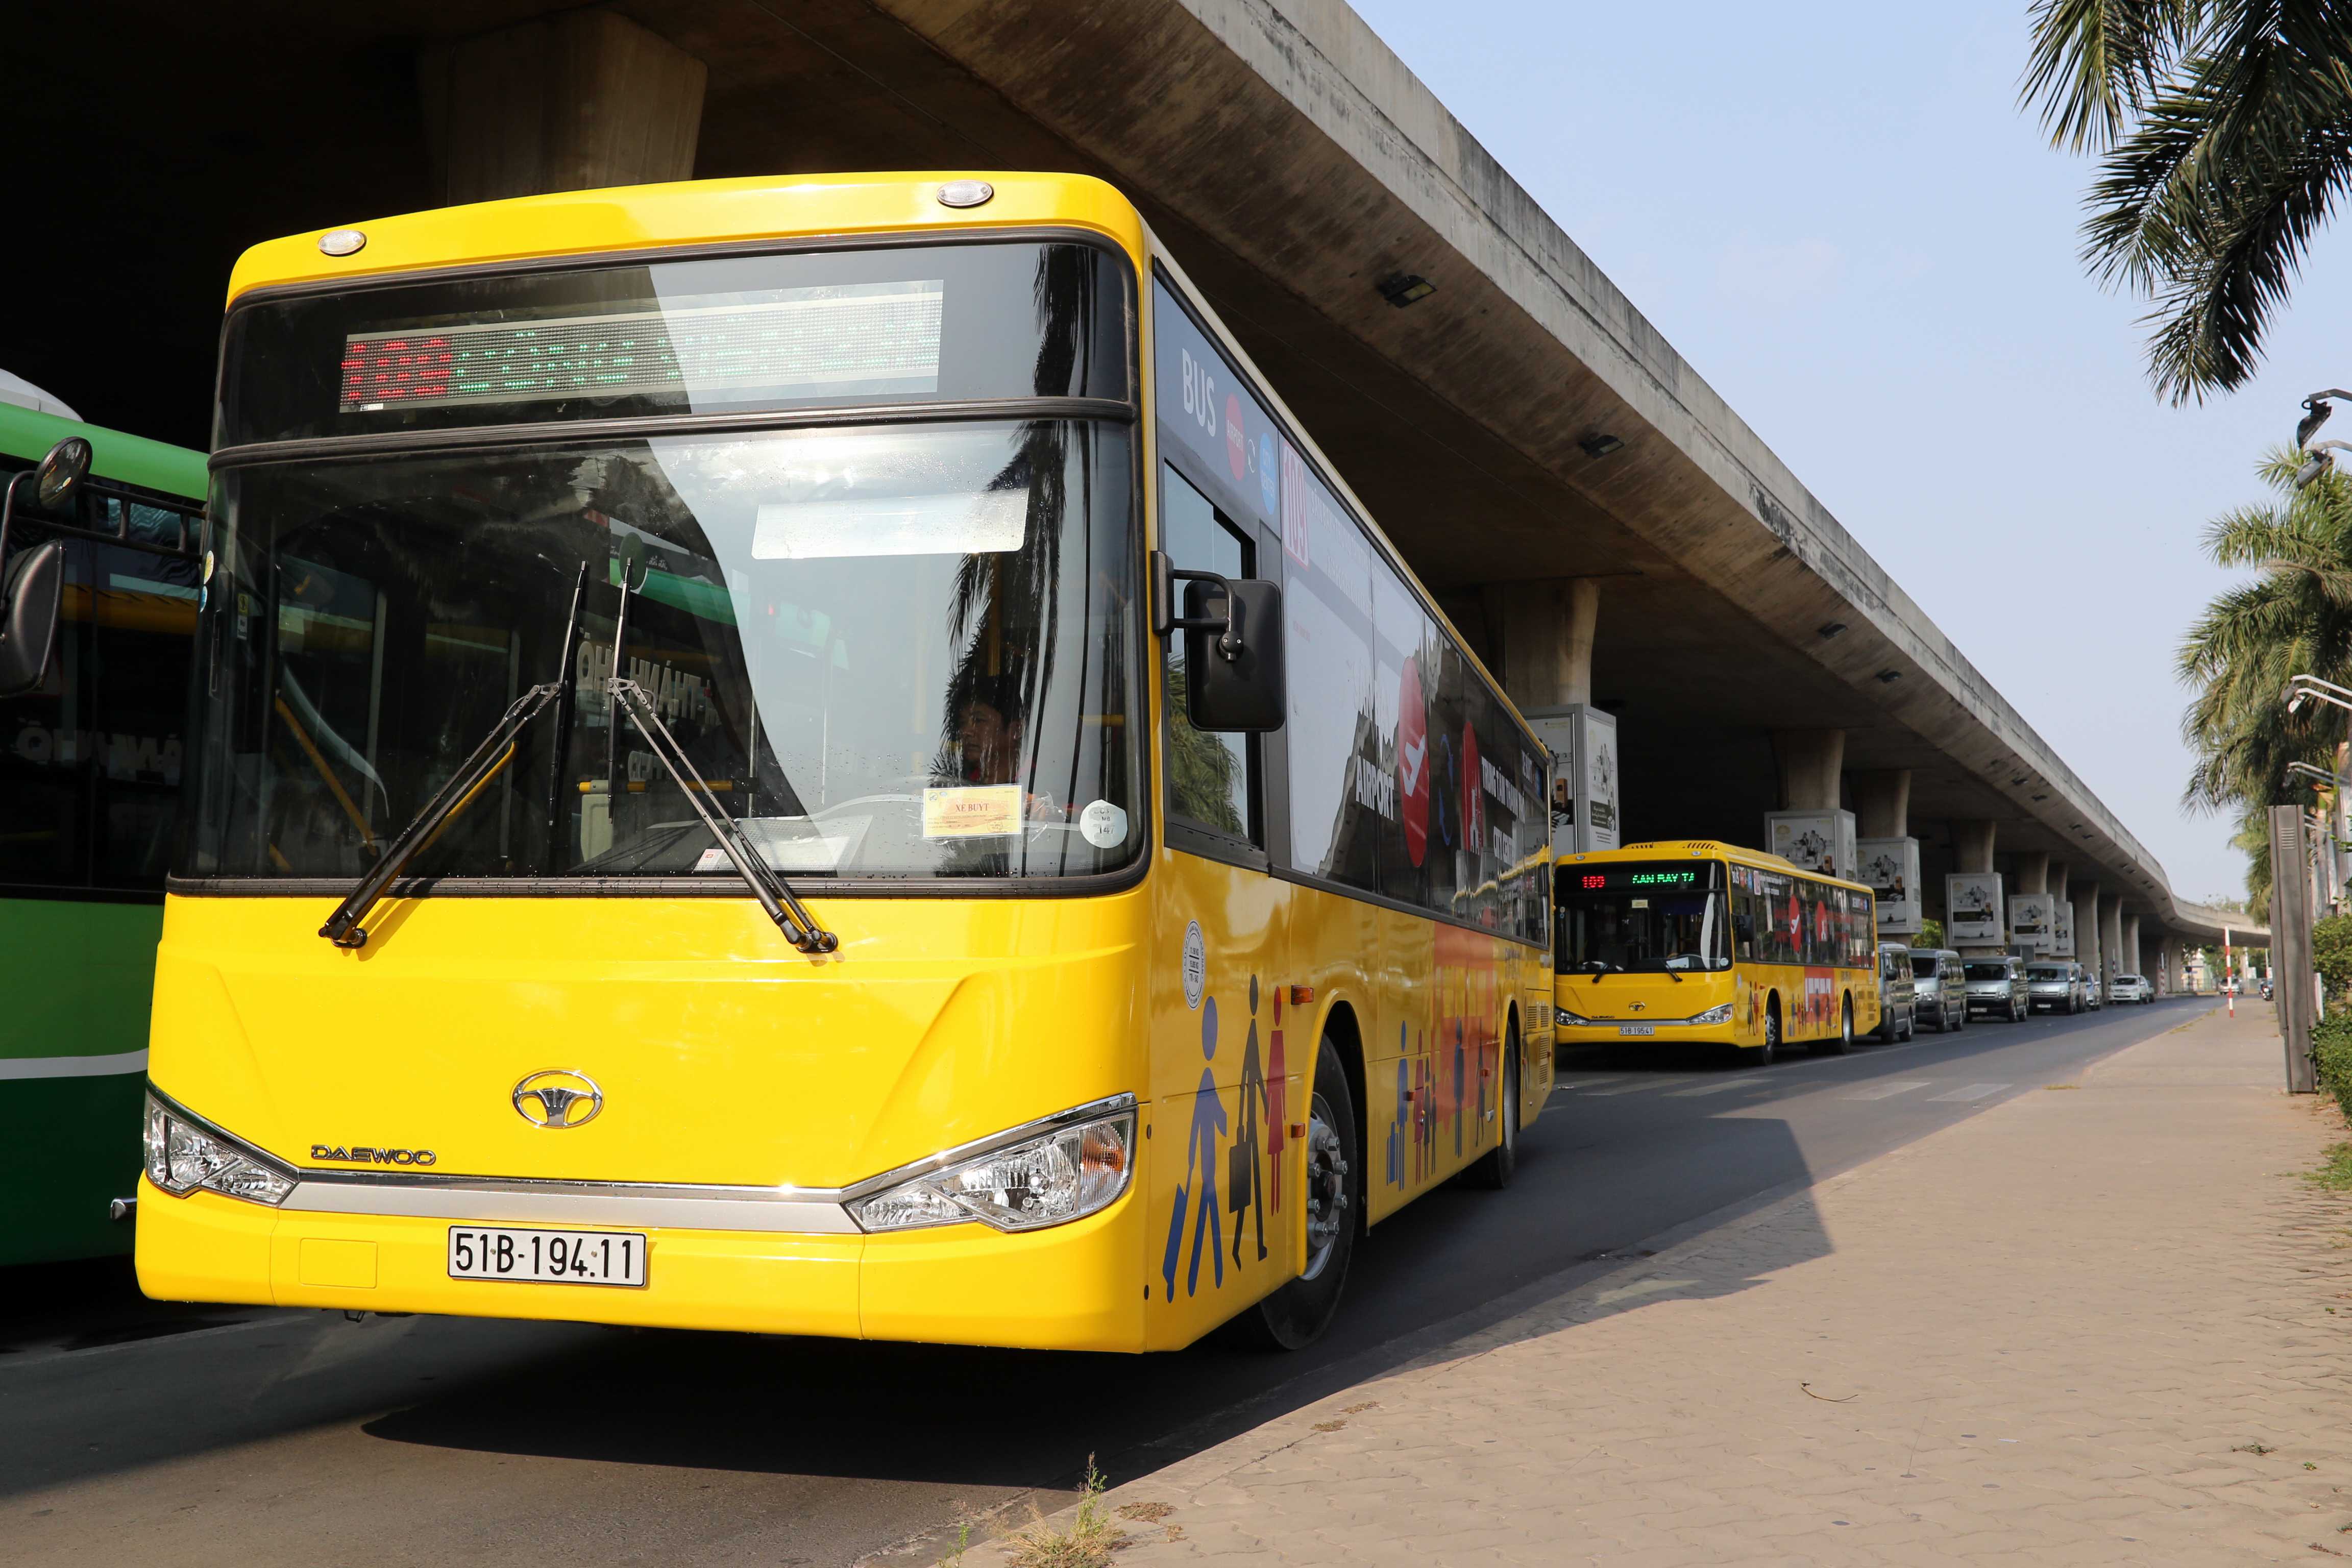 Xe buýt chất lượng cao phục vụ người dân và du khách quốc tế với tuyến đường từ sân bay Tân Sơn Nhất đến trung tâm thành phố và ngược lại - Ảnh: Độc Lập